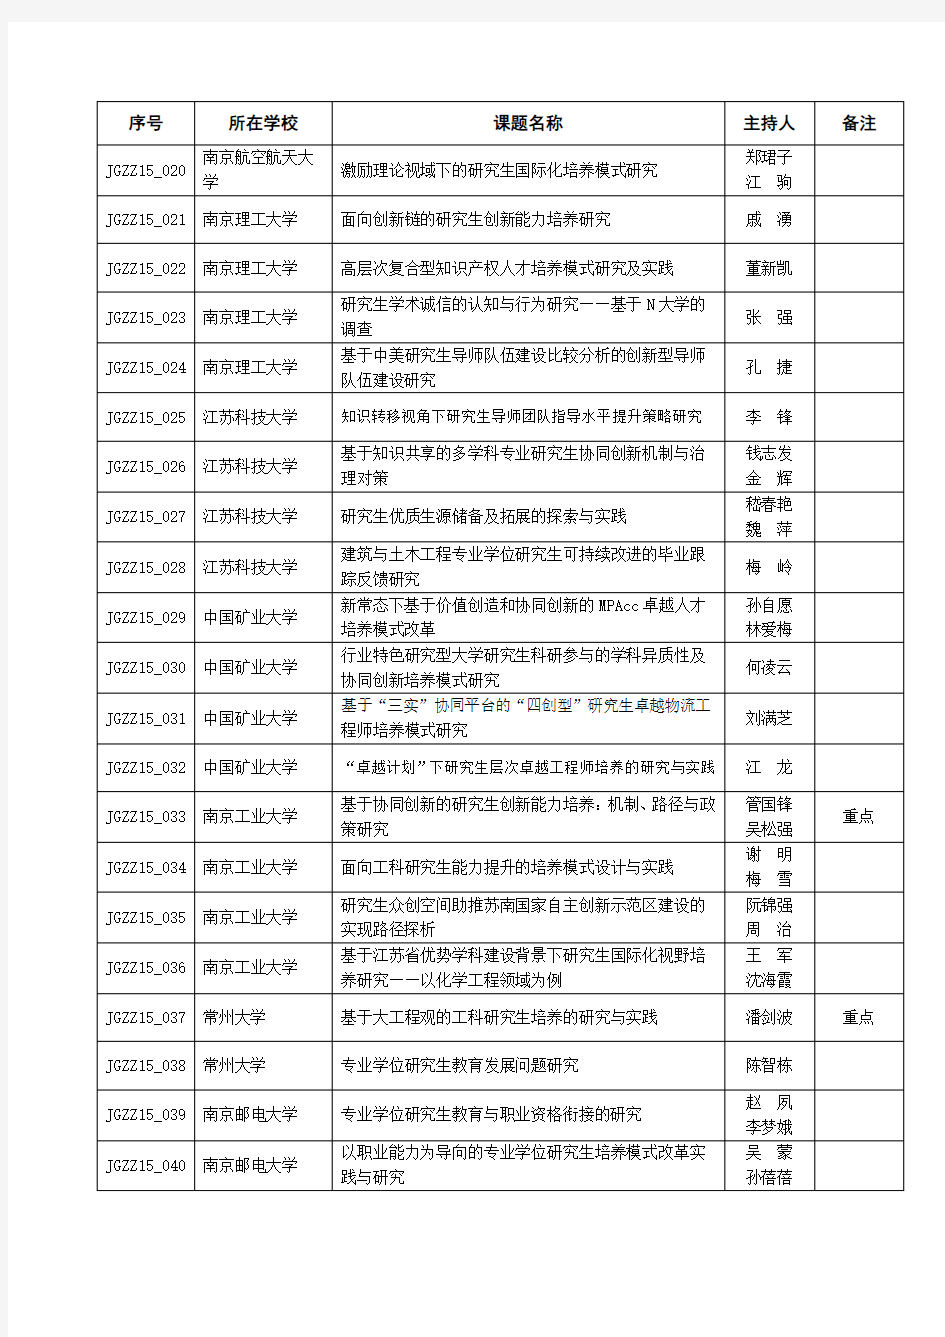 江苏省度研究生教育教学改革研究与实践课题(省立省助)(113项)资料